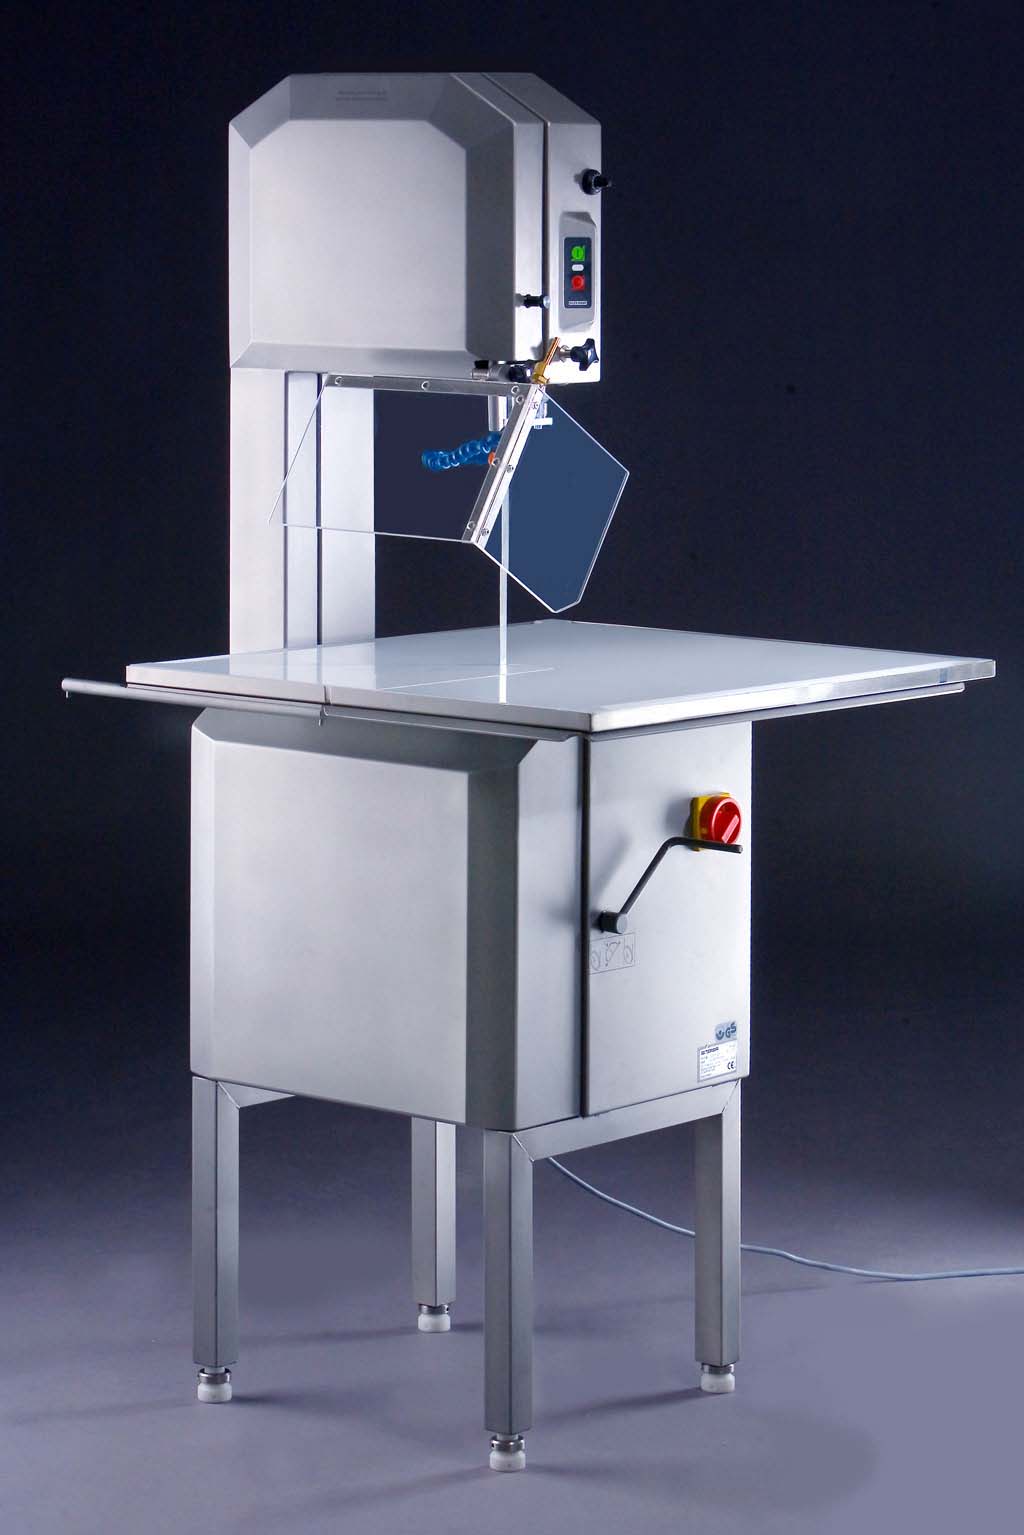 cut-grinder // die weltweit einzige Diamant-Pathologiesäge mit einer Schnitthöhe bis 330mm! Dieses Trennschleifgerät mit festem Arbeitstisch